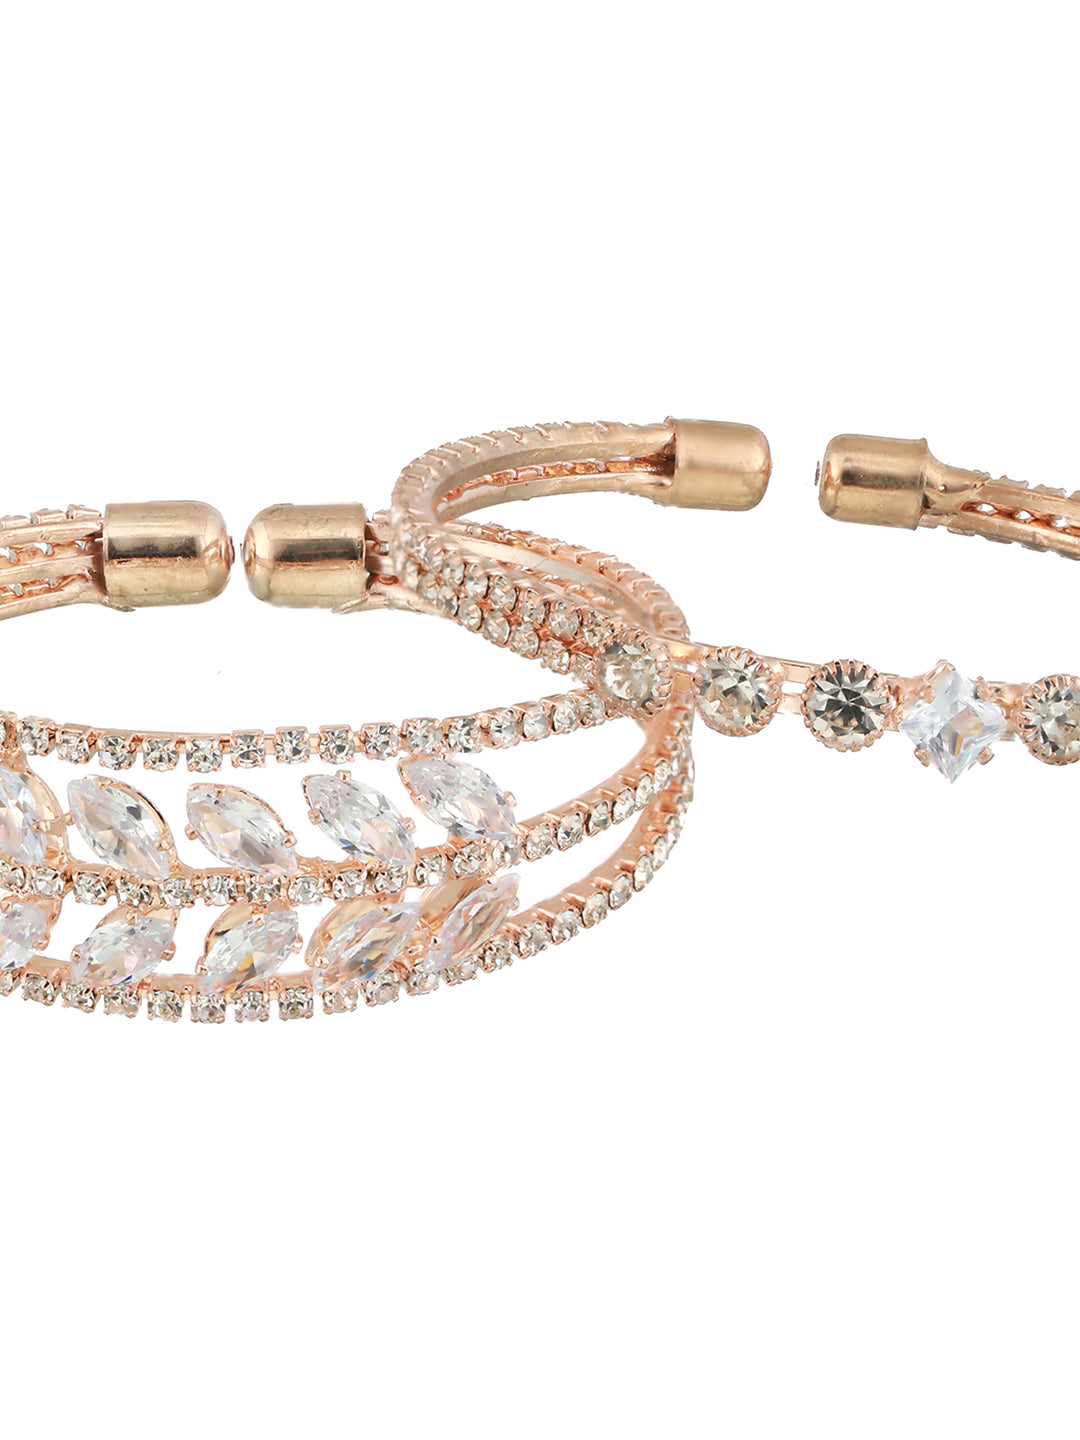 Jazz And Sizzle Set Of 2 Rose Gold-Plated White Crystal Studded Bangle Style Cuff Bracelet - Jazzandsizzle